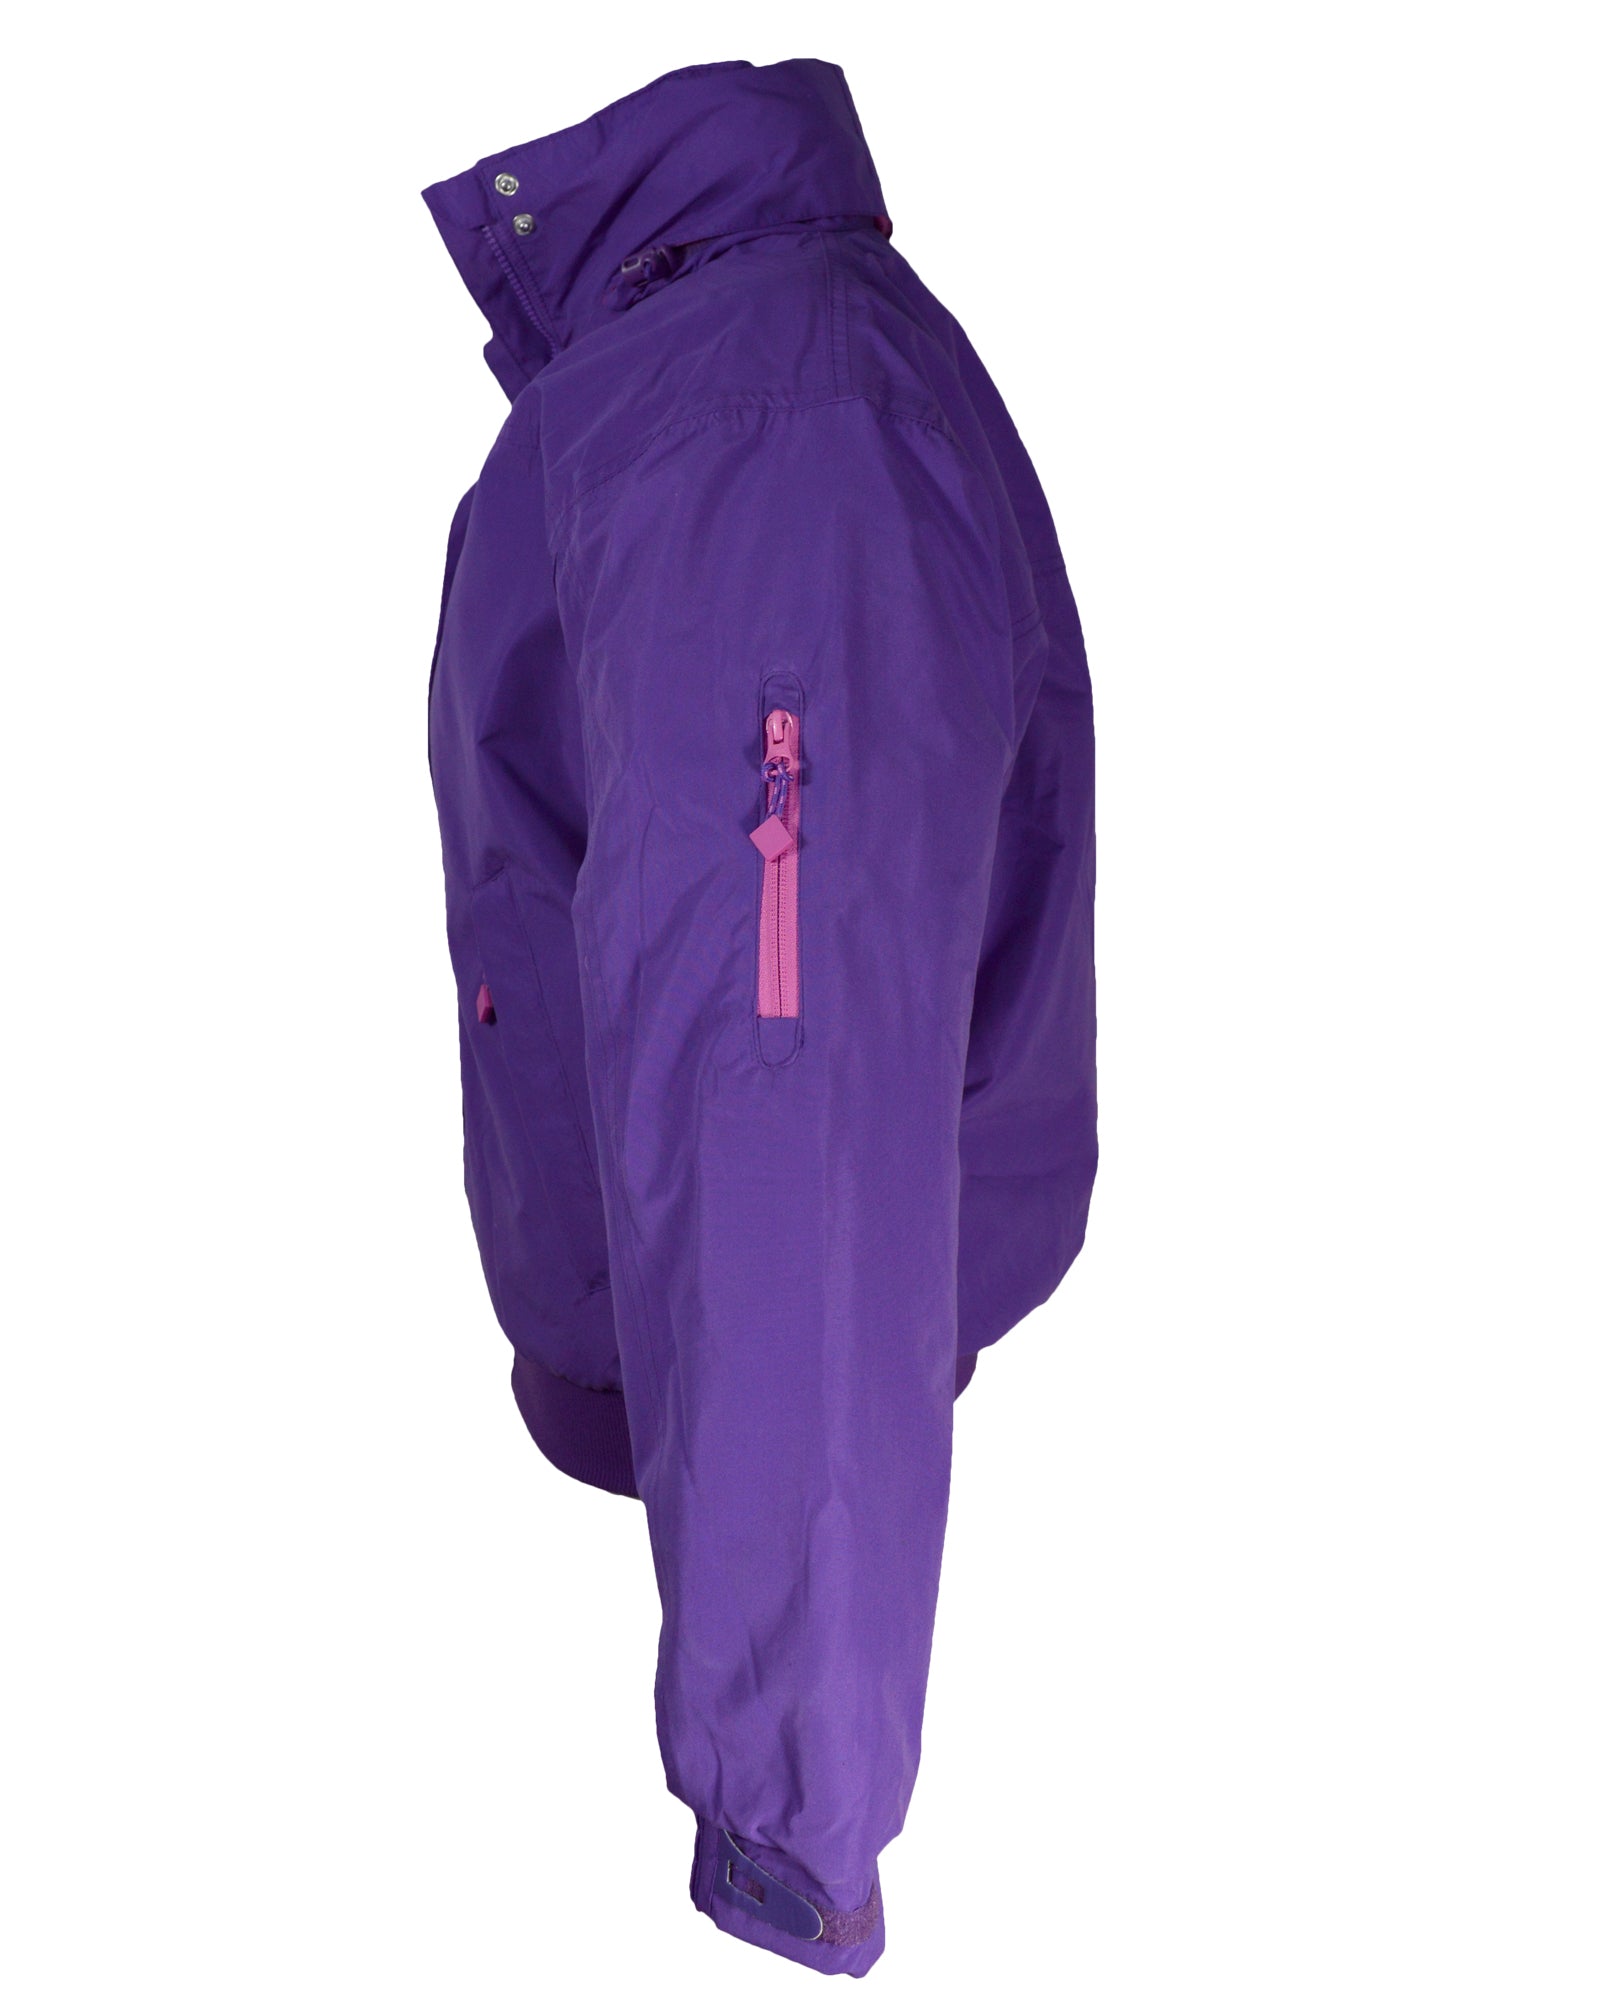 Regents View Womens Fleece Lined Bomber Jacket - Purple